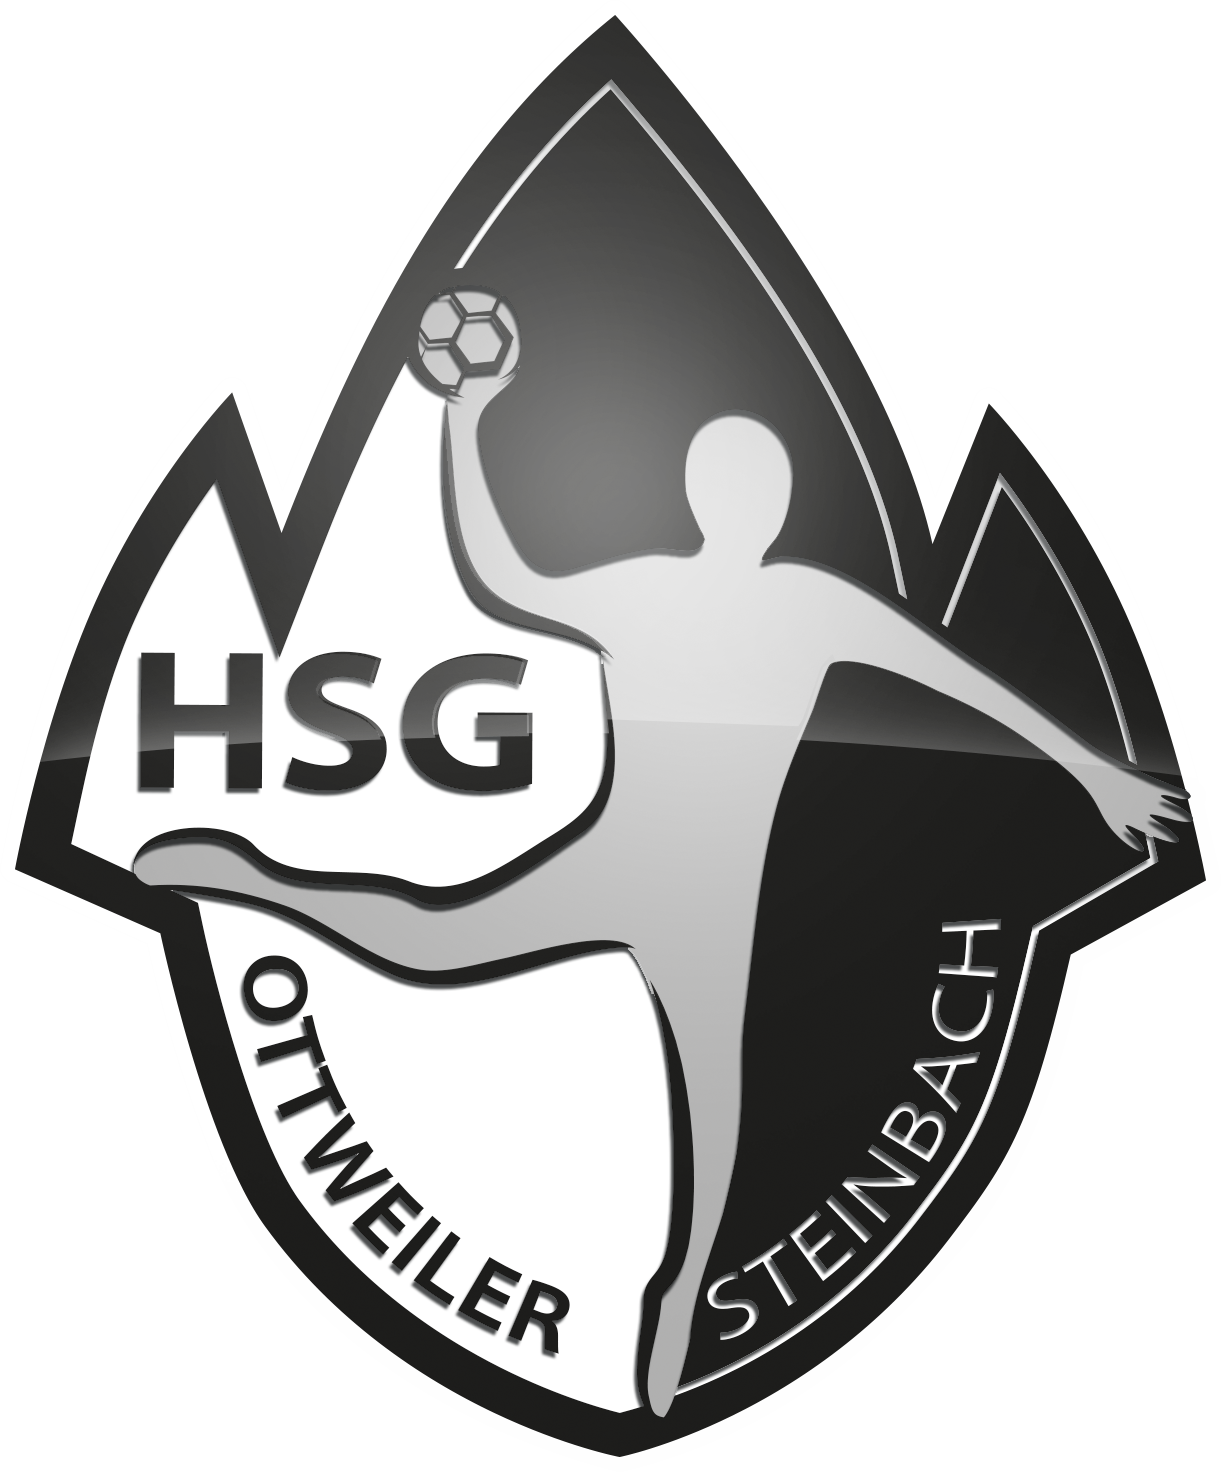 HSG Ottweiler Steinbach Teamshop